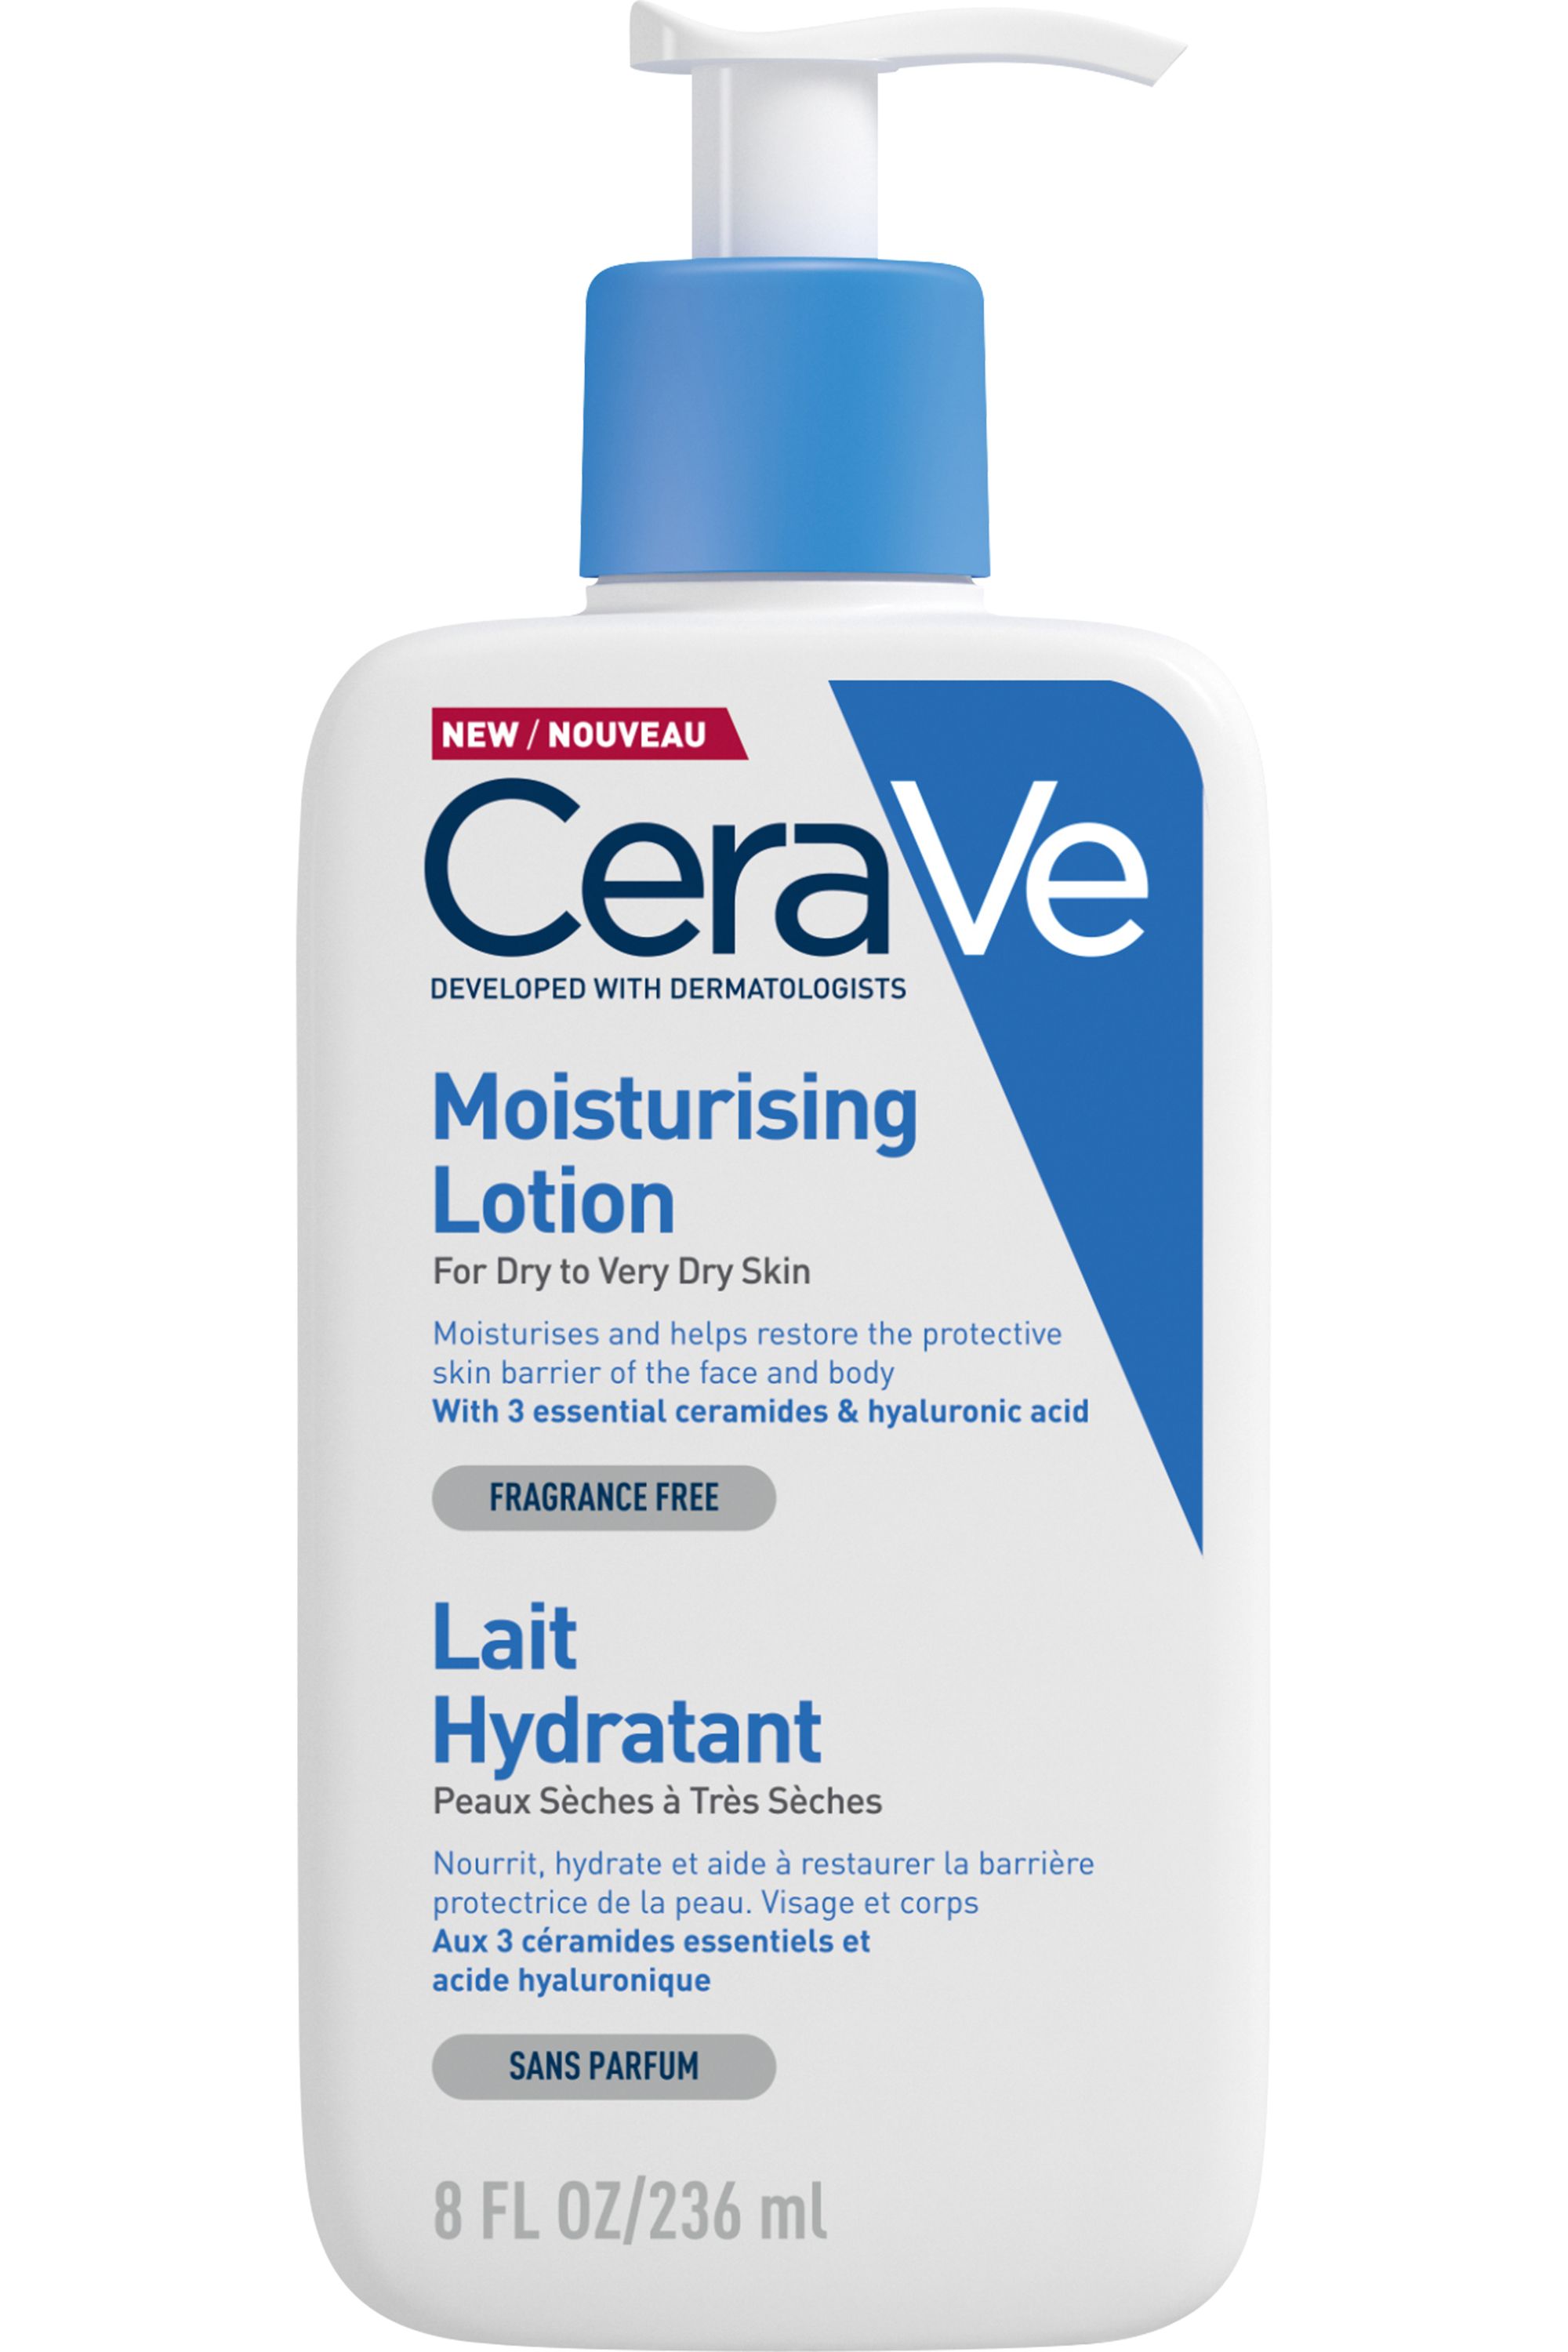 Acheter Crème Hydratante Visage 52mL de CeraVe au meilleur prix sur MON  BEAUTY COACH – Mon Beauty Coach